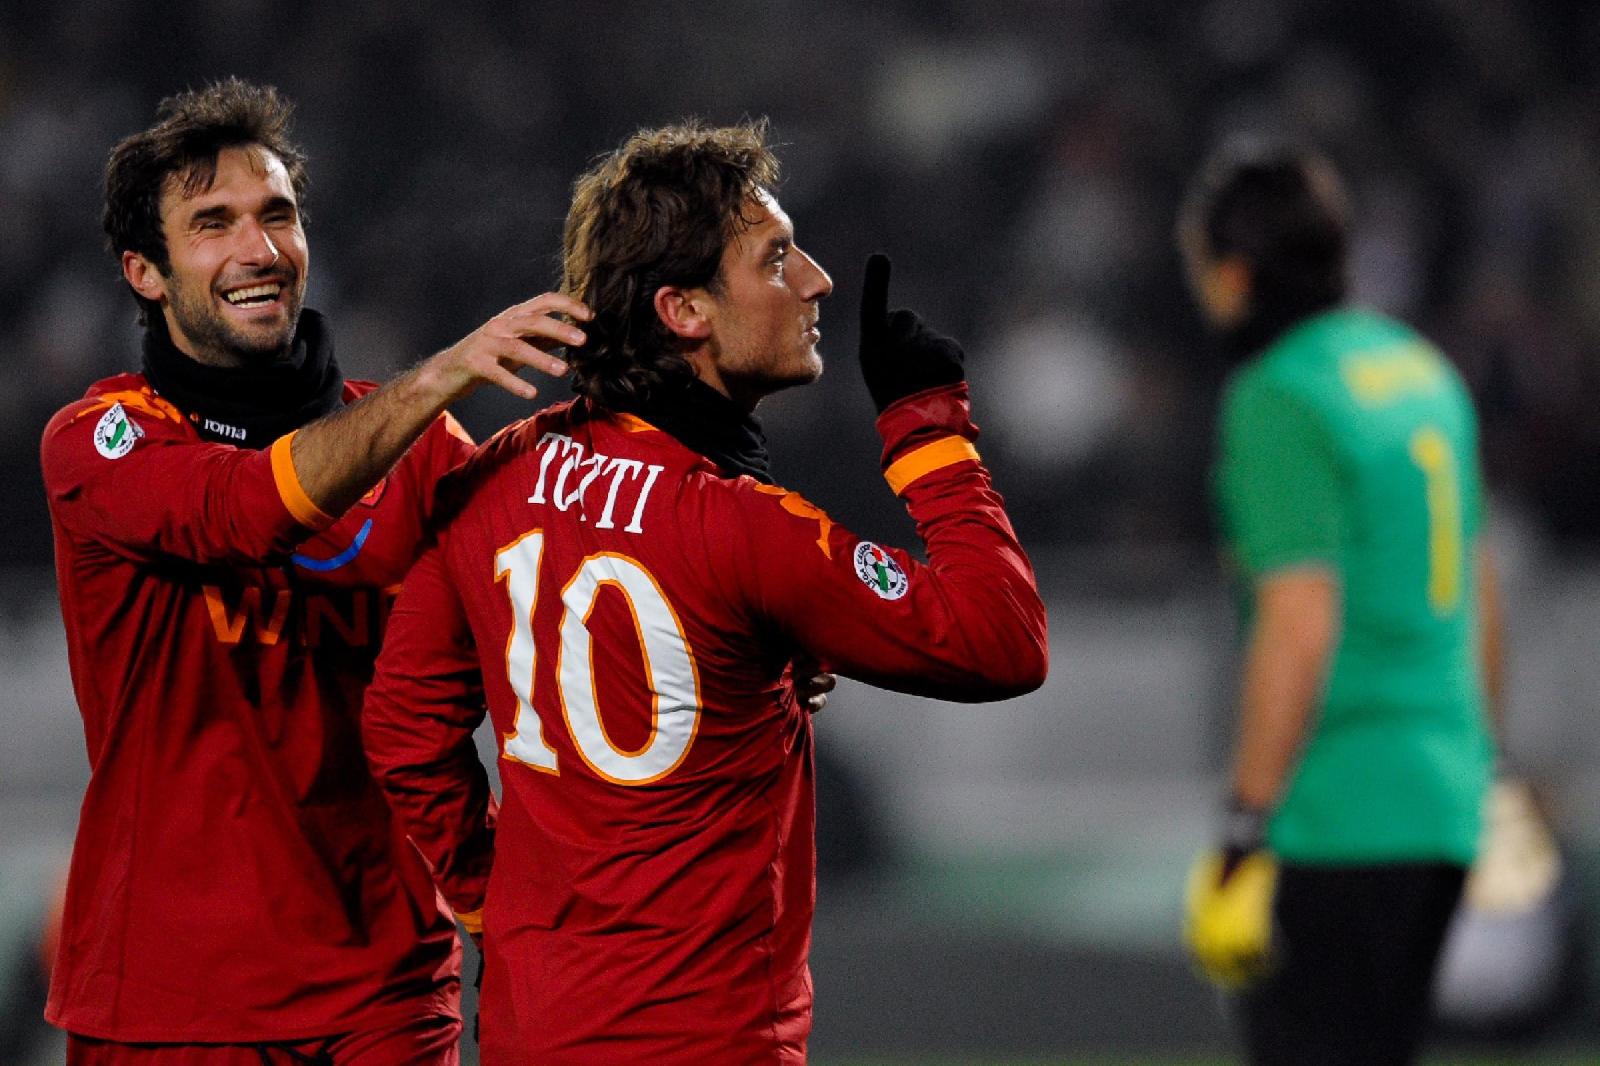 Totti days - 23 gennaio 2010: ahò, zitti tutti, ha segnato Totti